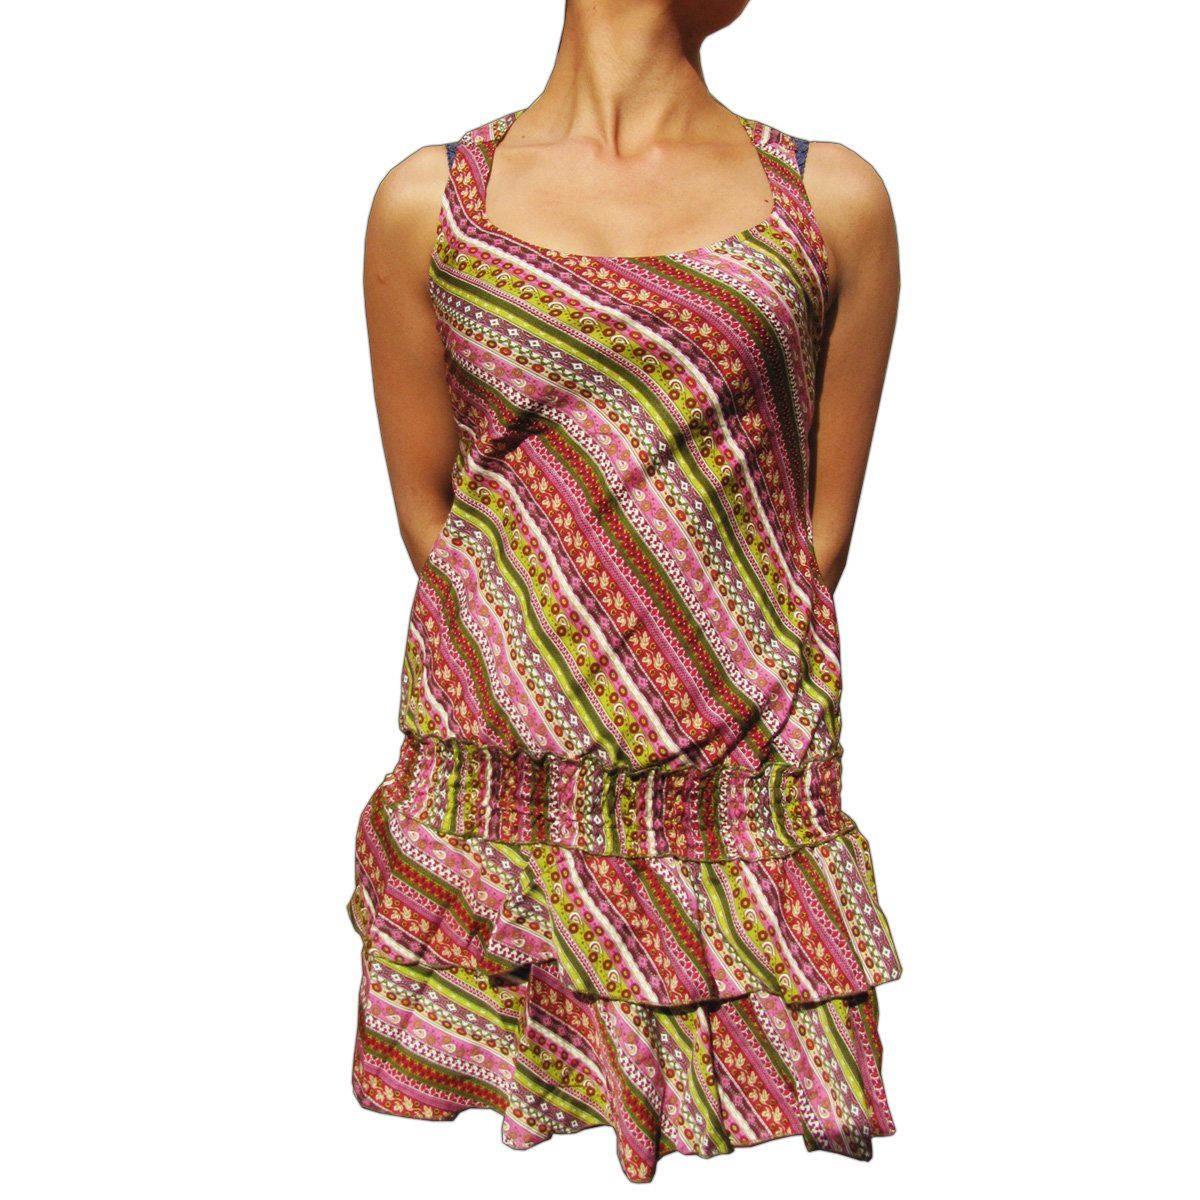 PANASIAM Tunikakleid Sommerkleid in verschiedenen Designs farbenfrohe Tunika aus feiner Viskose auch für Schlagerparty 70er Party oder Festivals ein Hingucker bunt 2